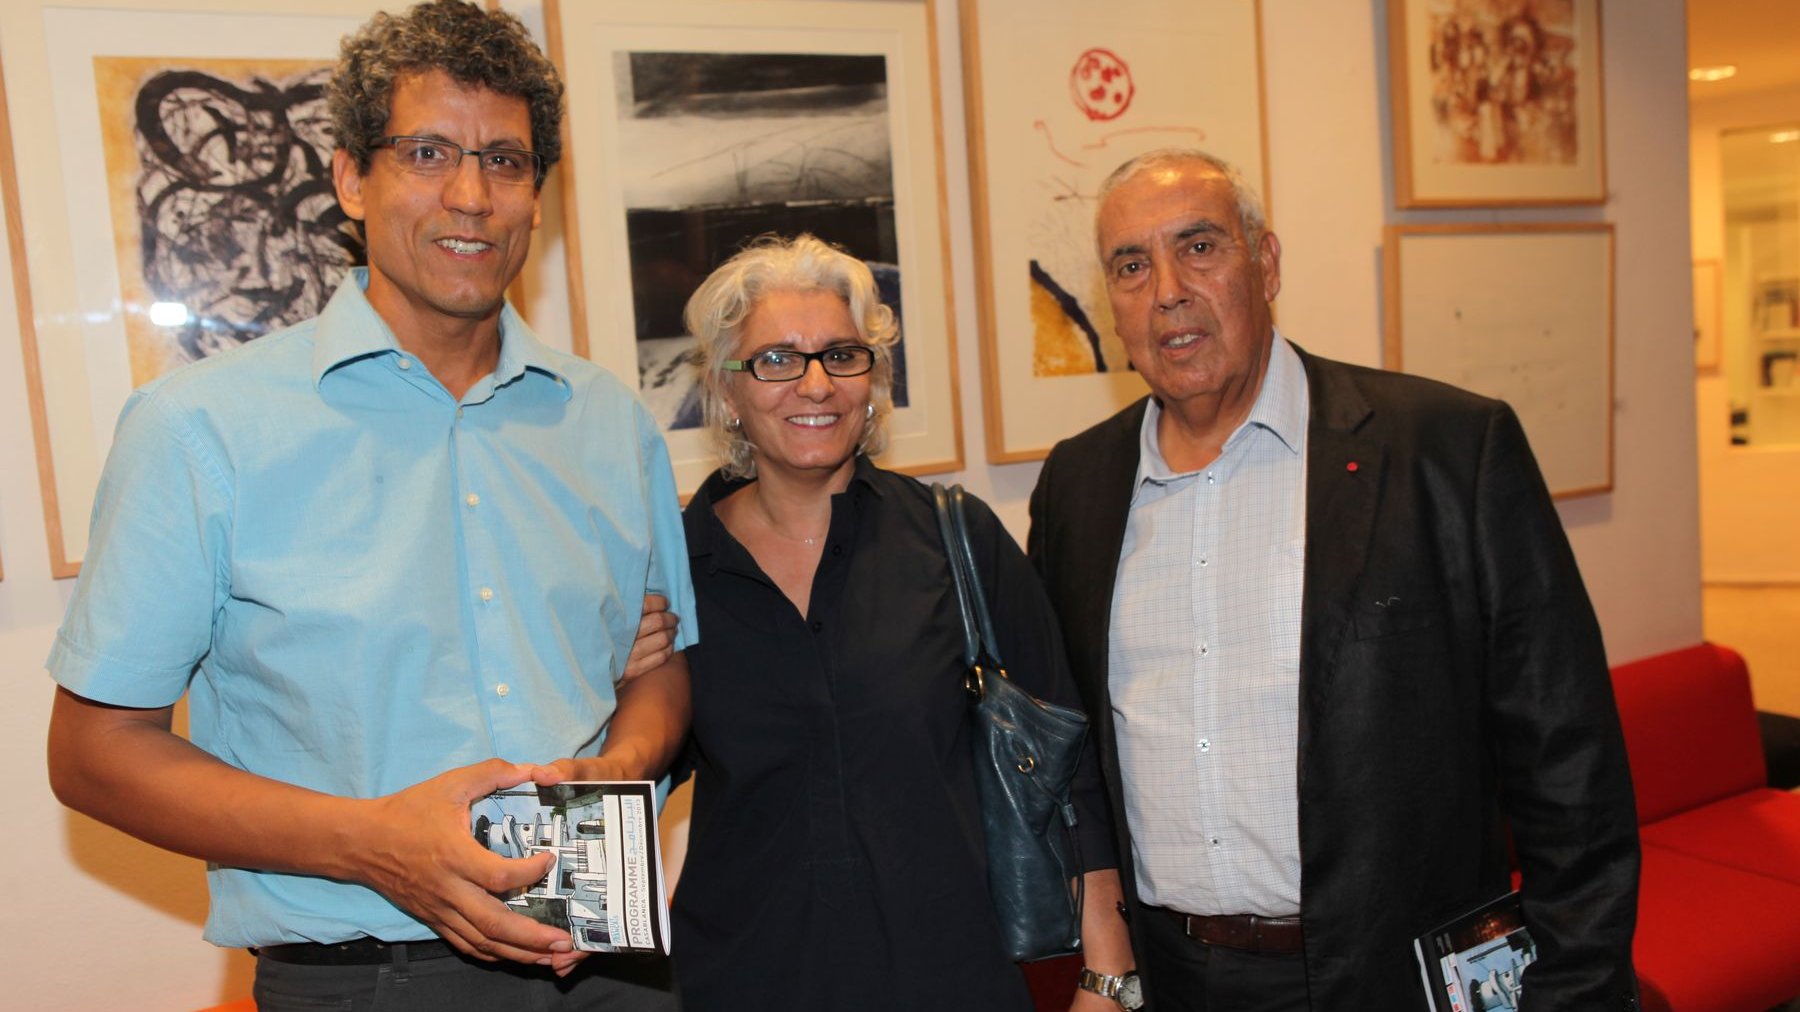 Les grands passionnés de la littérature étaient bien sûr présents. Ici, à droite, Abdelkader Retnani, directeur des éditions la Croisée des chemins, qui oeuvre activement pour la culture au Maroc. A ses côtés, Layla Chaouni et Mohamed Rachdi.
